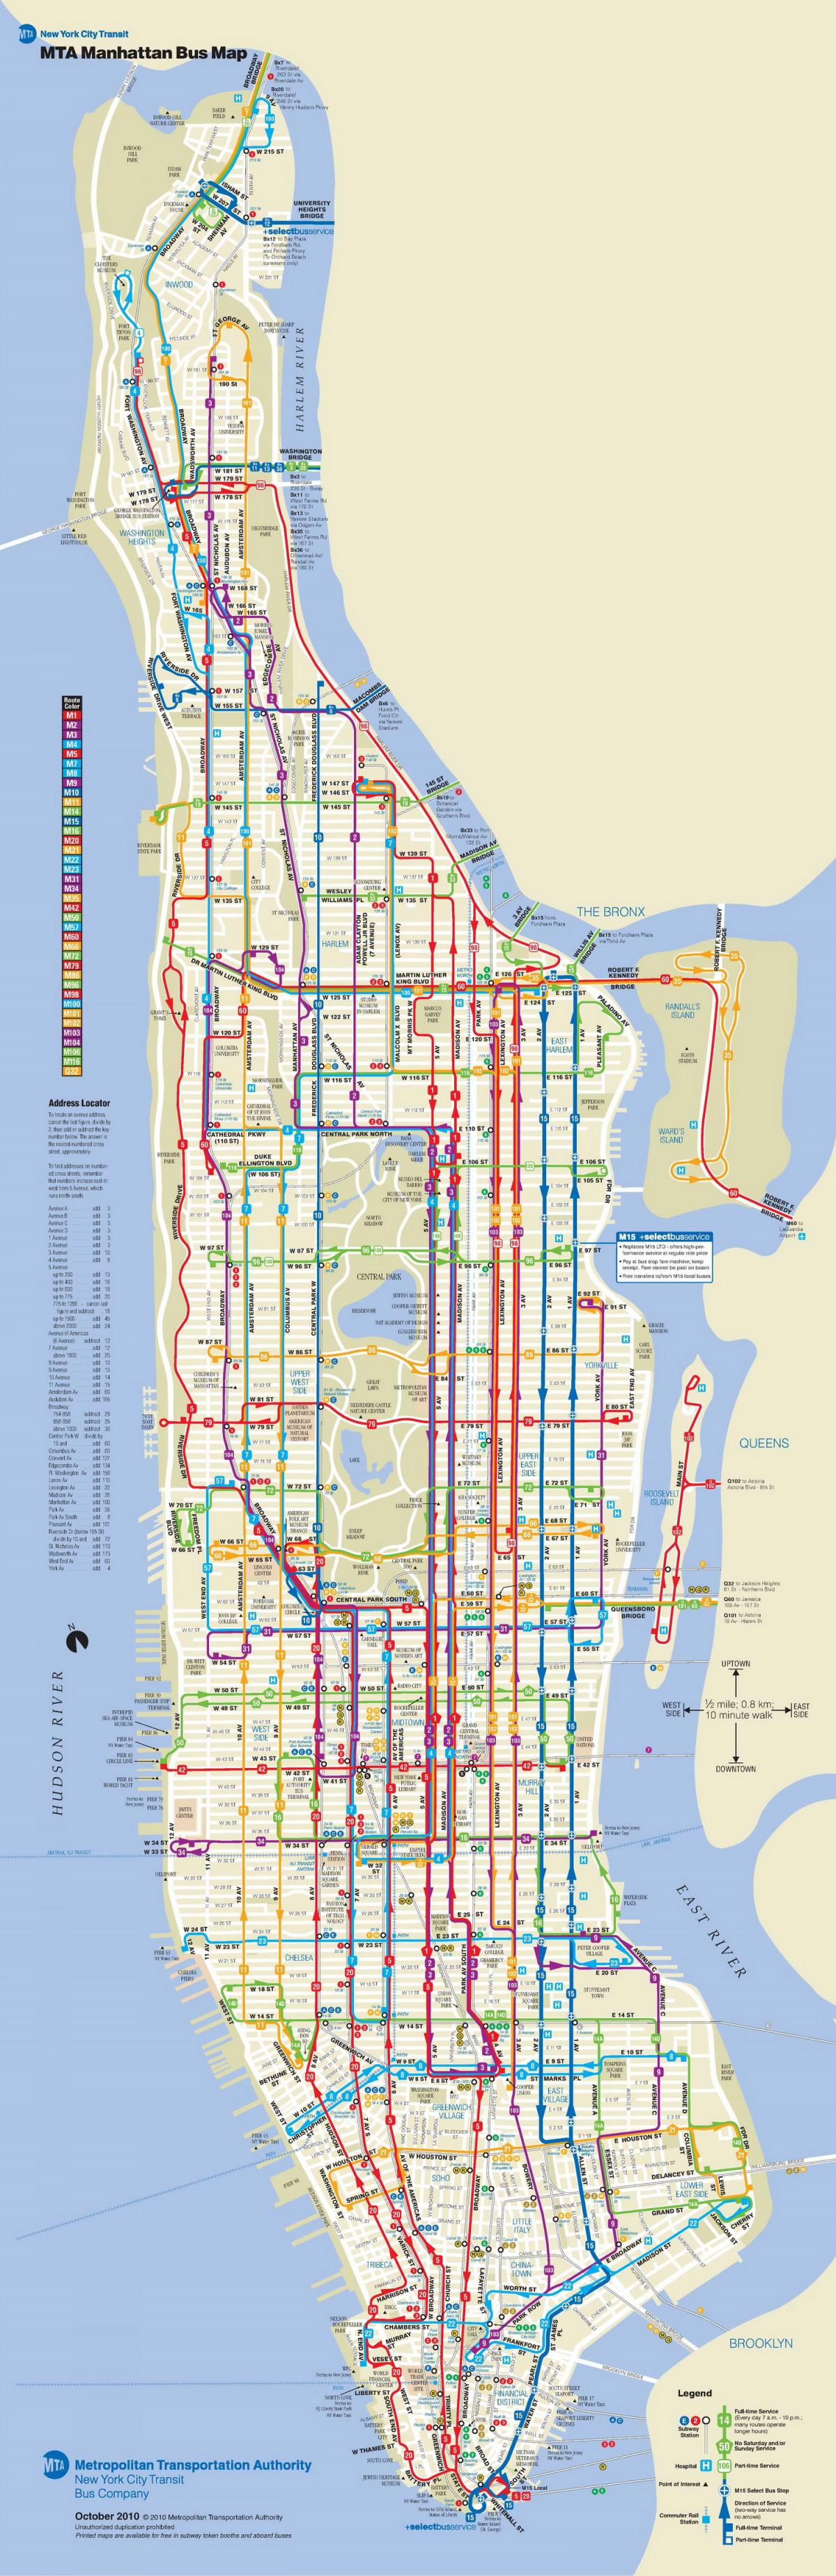 Manhattan bus kort med stop